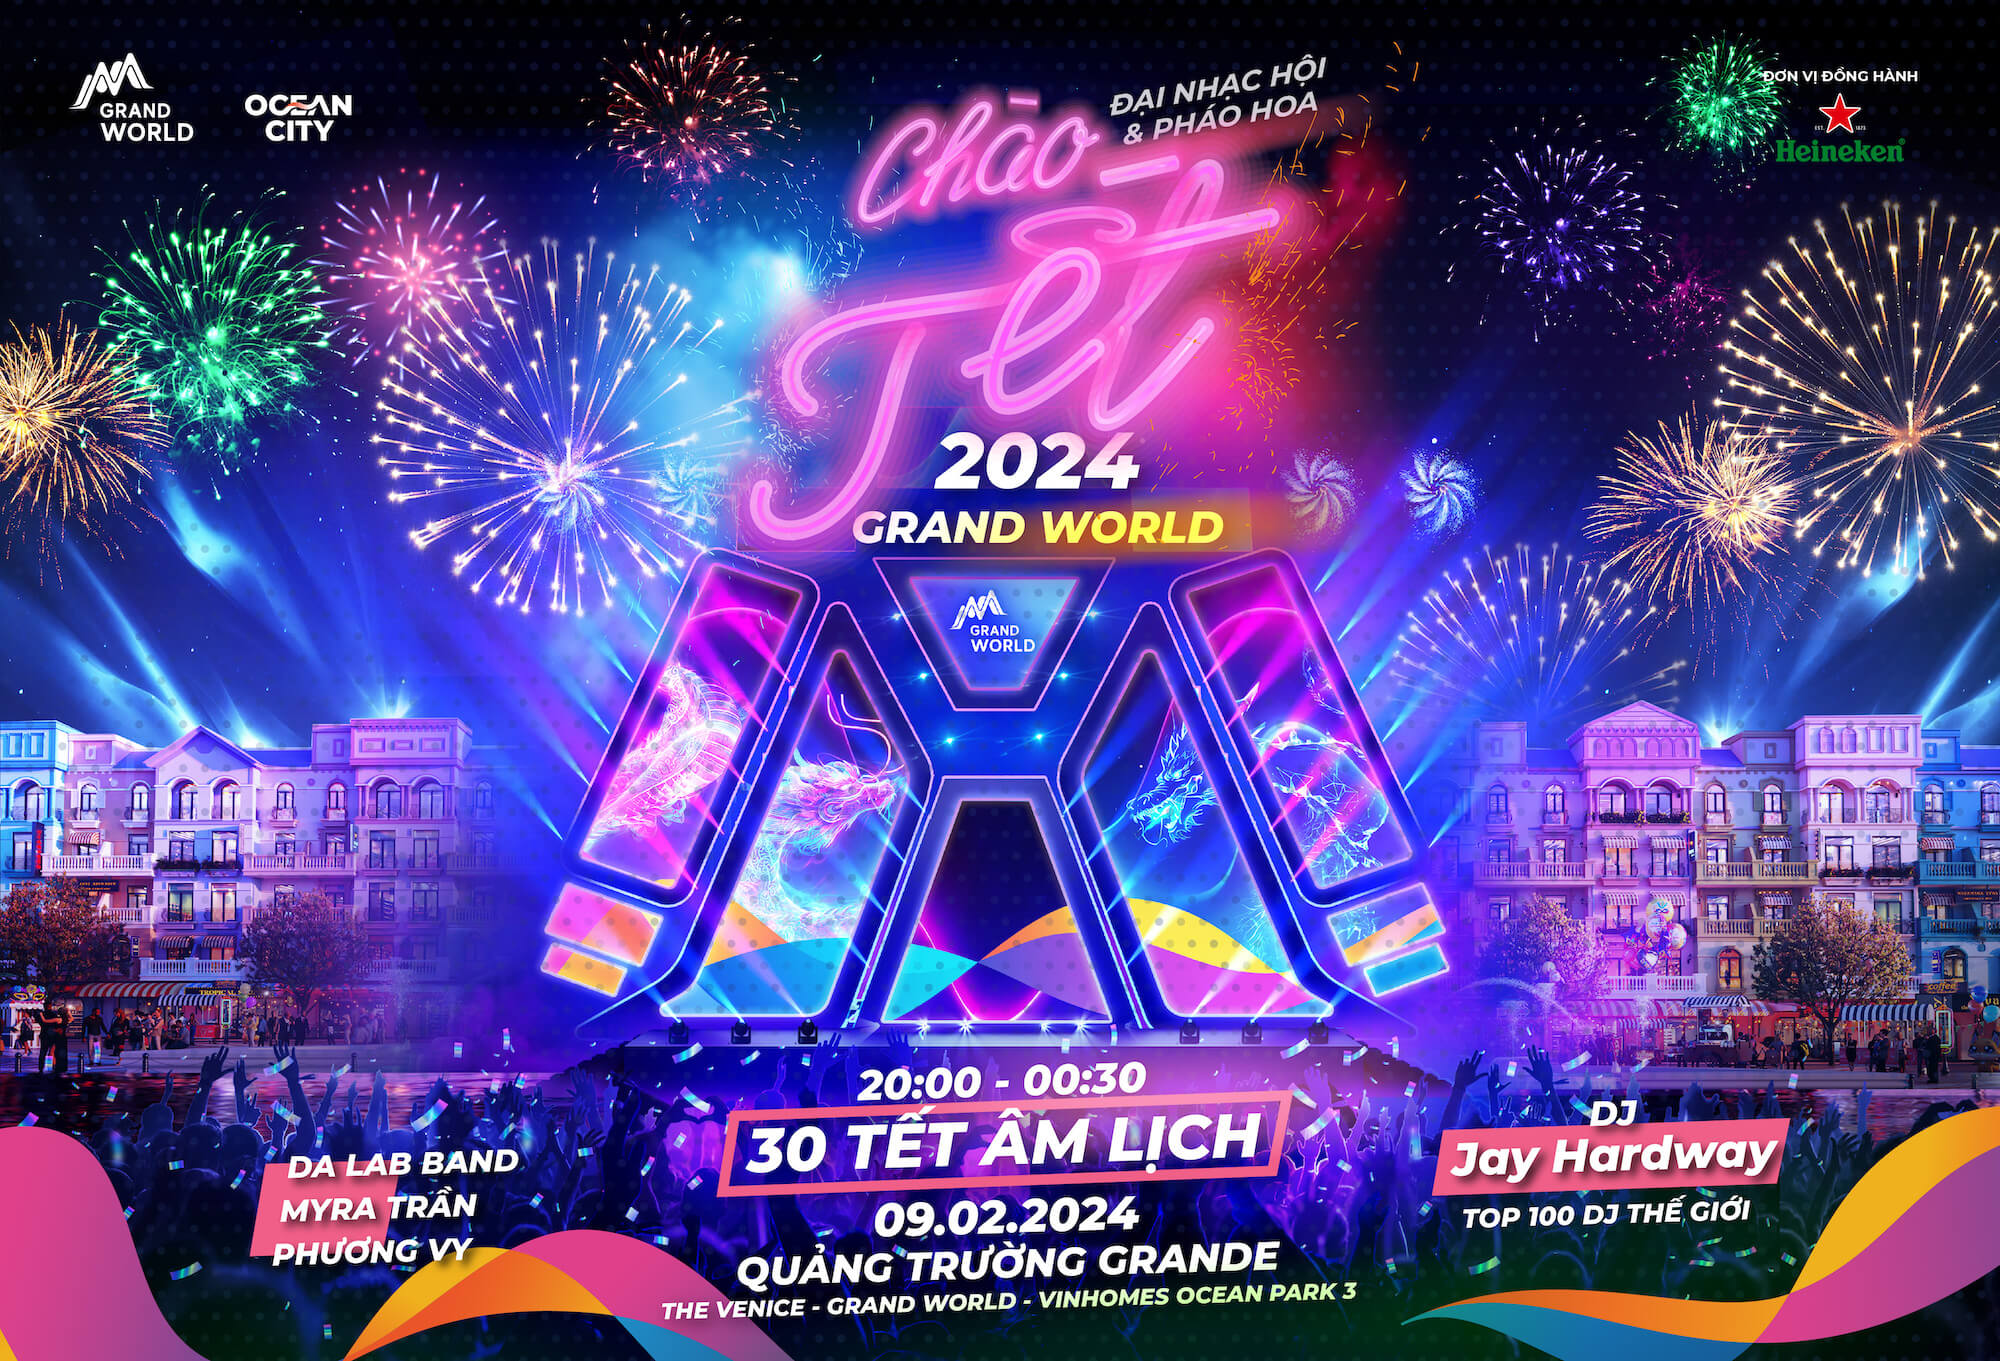 Đại nhạc hội và pháo hoa chào Tết Grand World – Countdown 2024